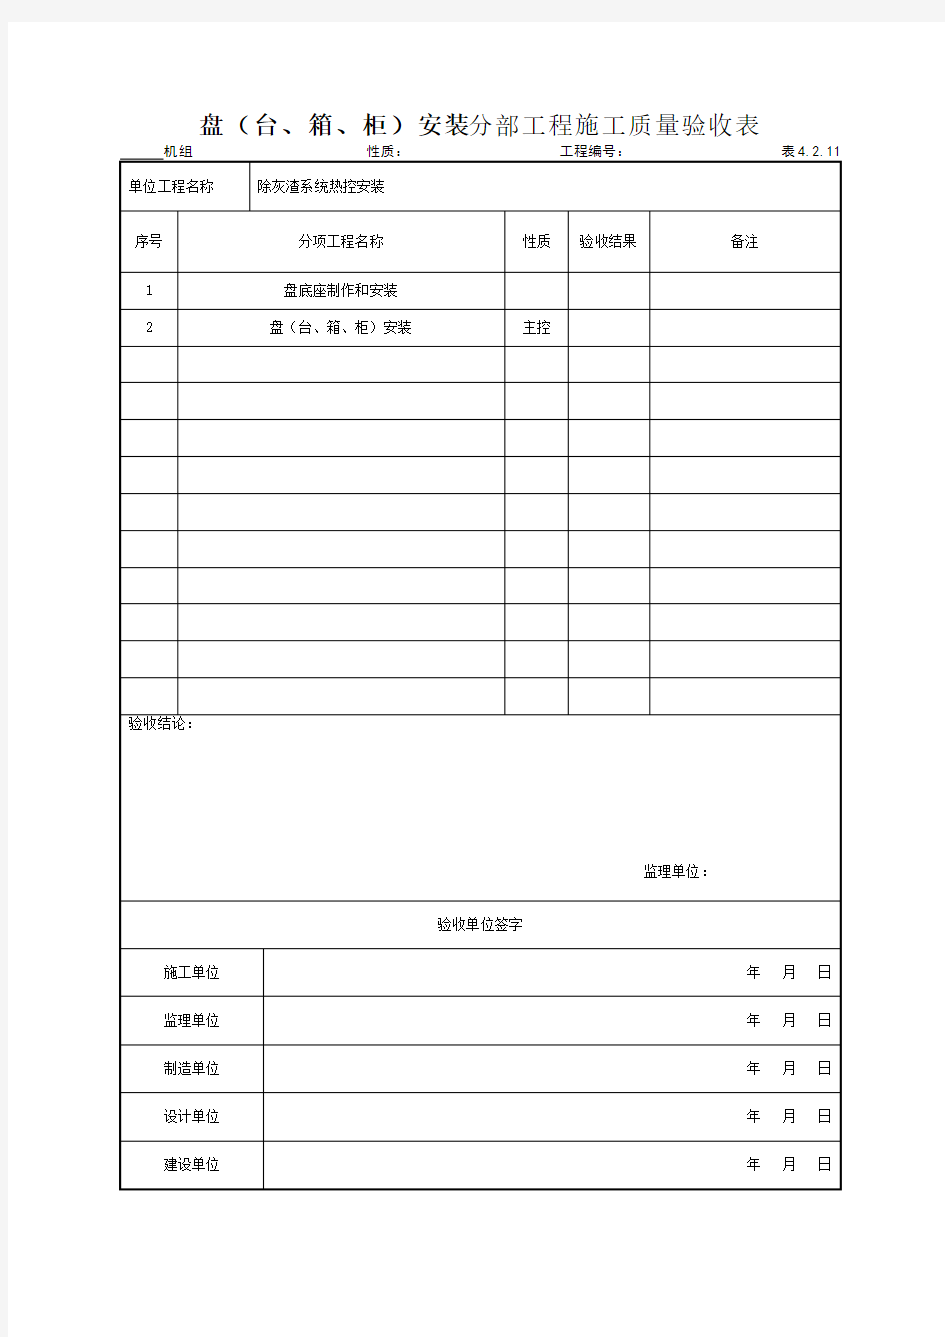 (301)盘(台、箱、柜)安装分部工程施工质量验收表